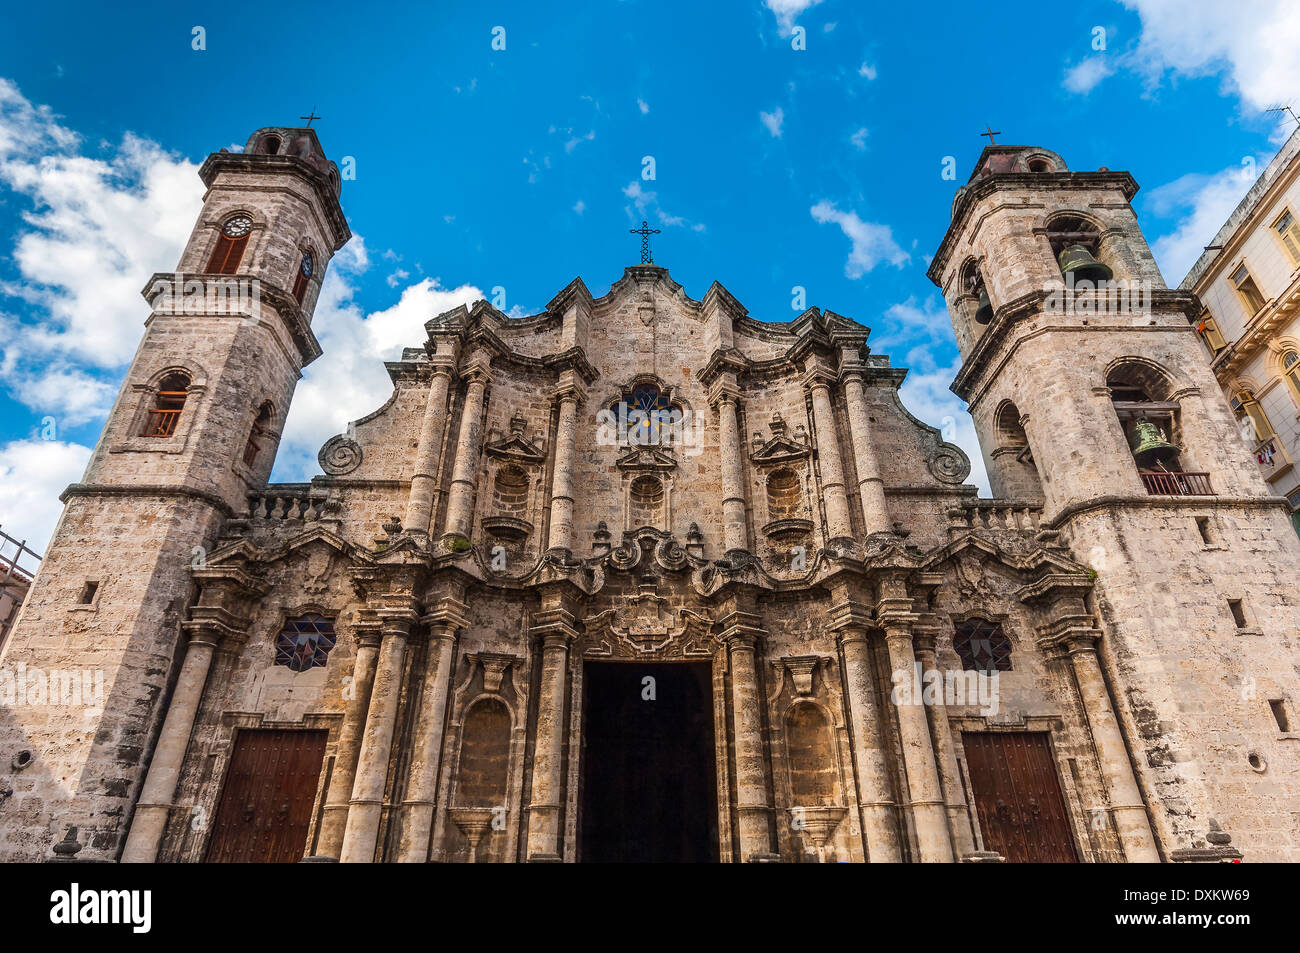 Place de la cathédrale de la Vierge Marie de la Concepcion Immaculada, La Havane, Cuba Banque D'Images